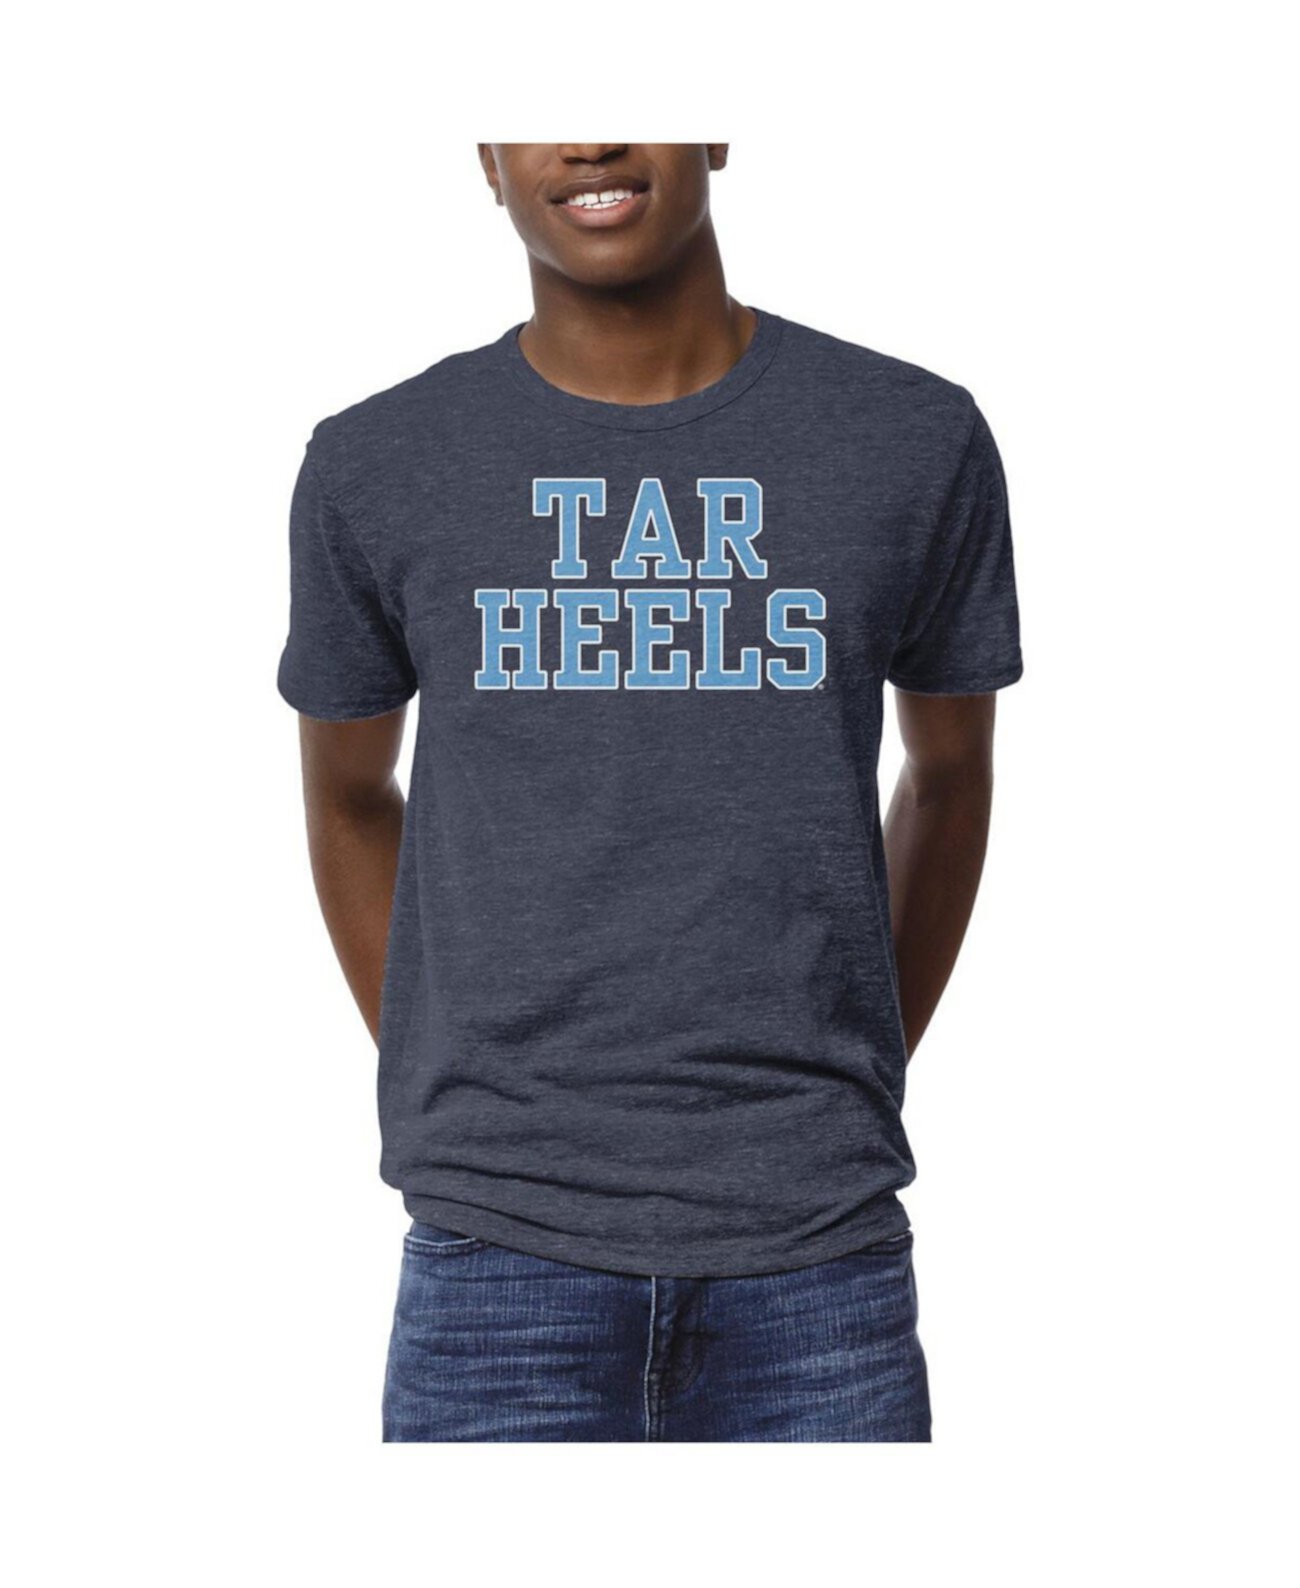 Мужская футболка темно-синего цвета North Carolina Tar Heels Local Victory Falls Tri-Blend League Collegiate Wear